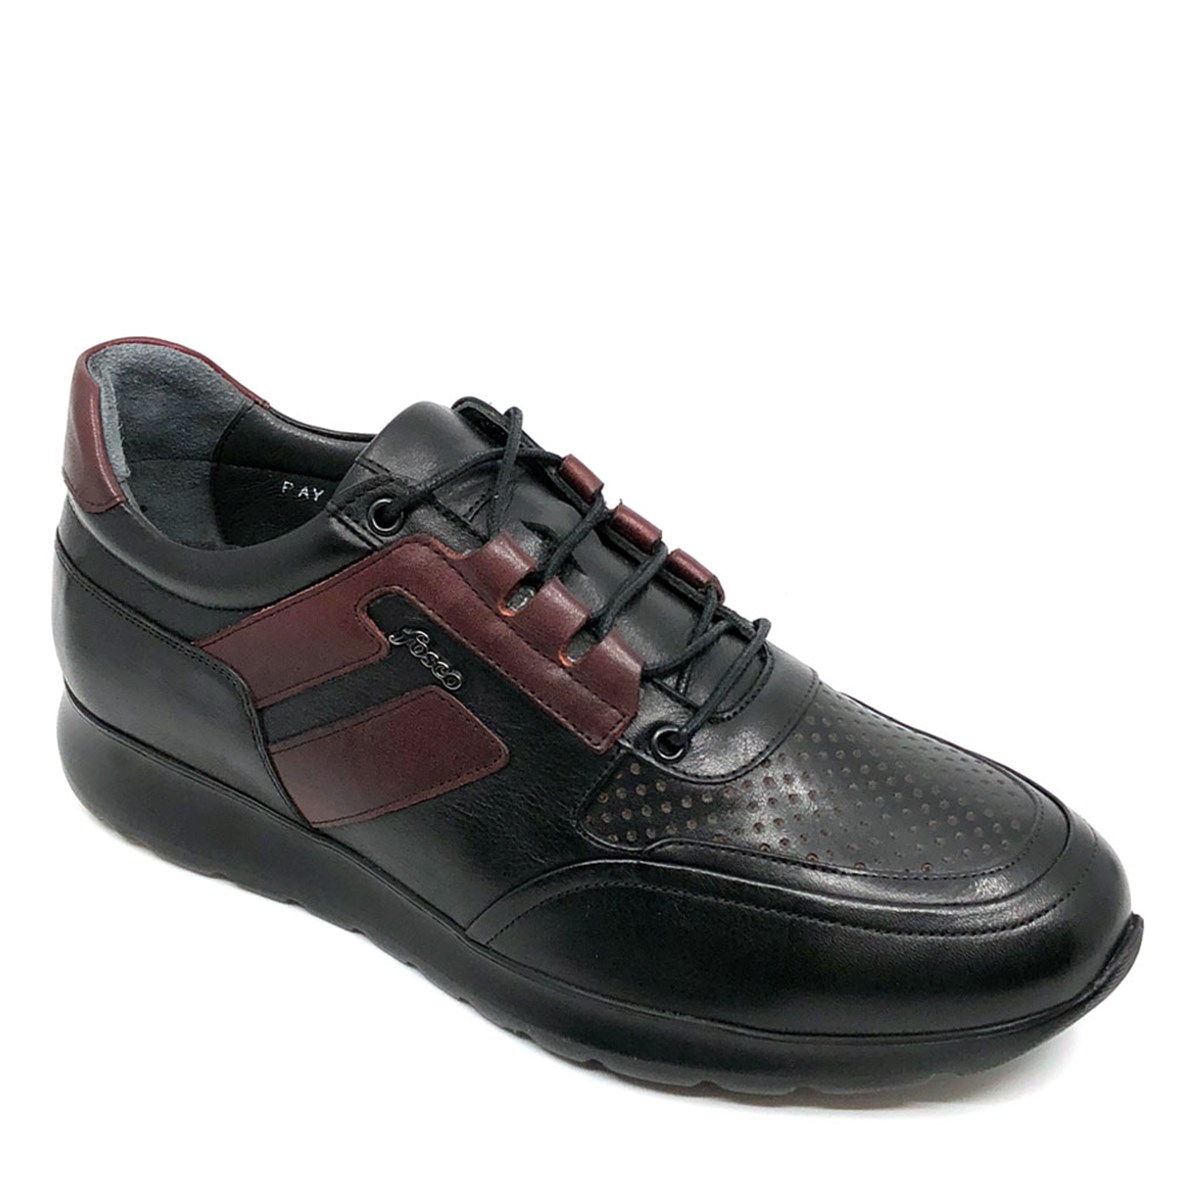 Sneakers Erkek Hakiki Deri Siyah Günlük Hafif Eva Taban Spor Ayakkabı, Renk: Siyah, Beden: 40